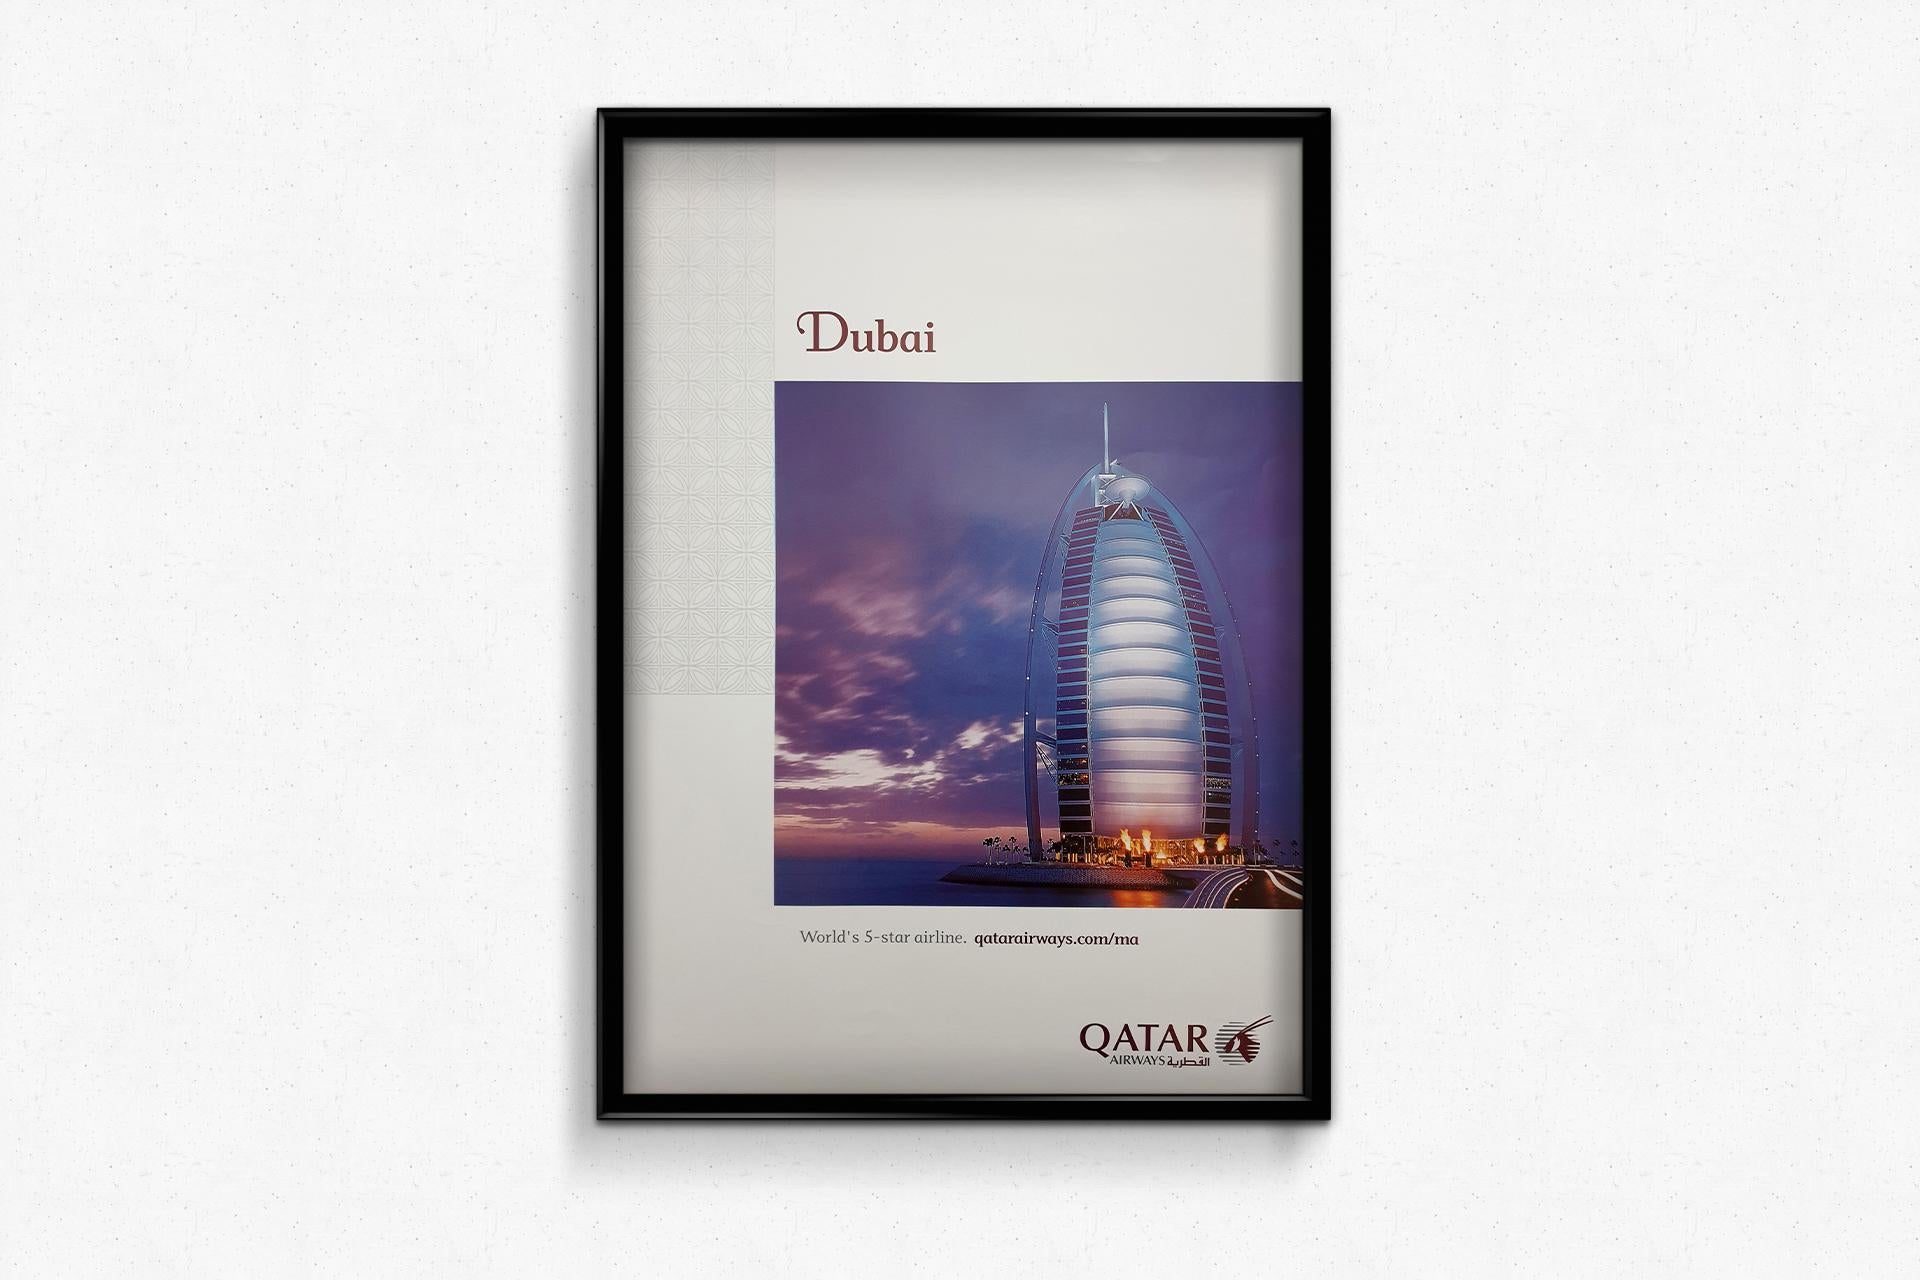 qatar airways poster